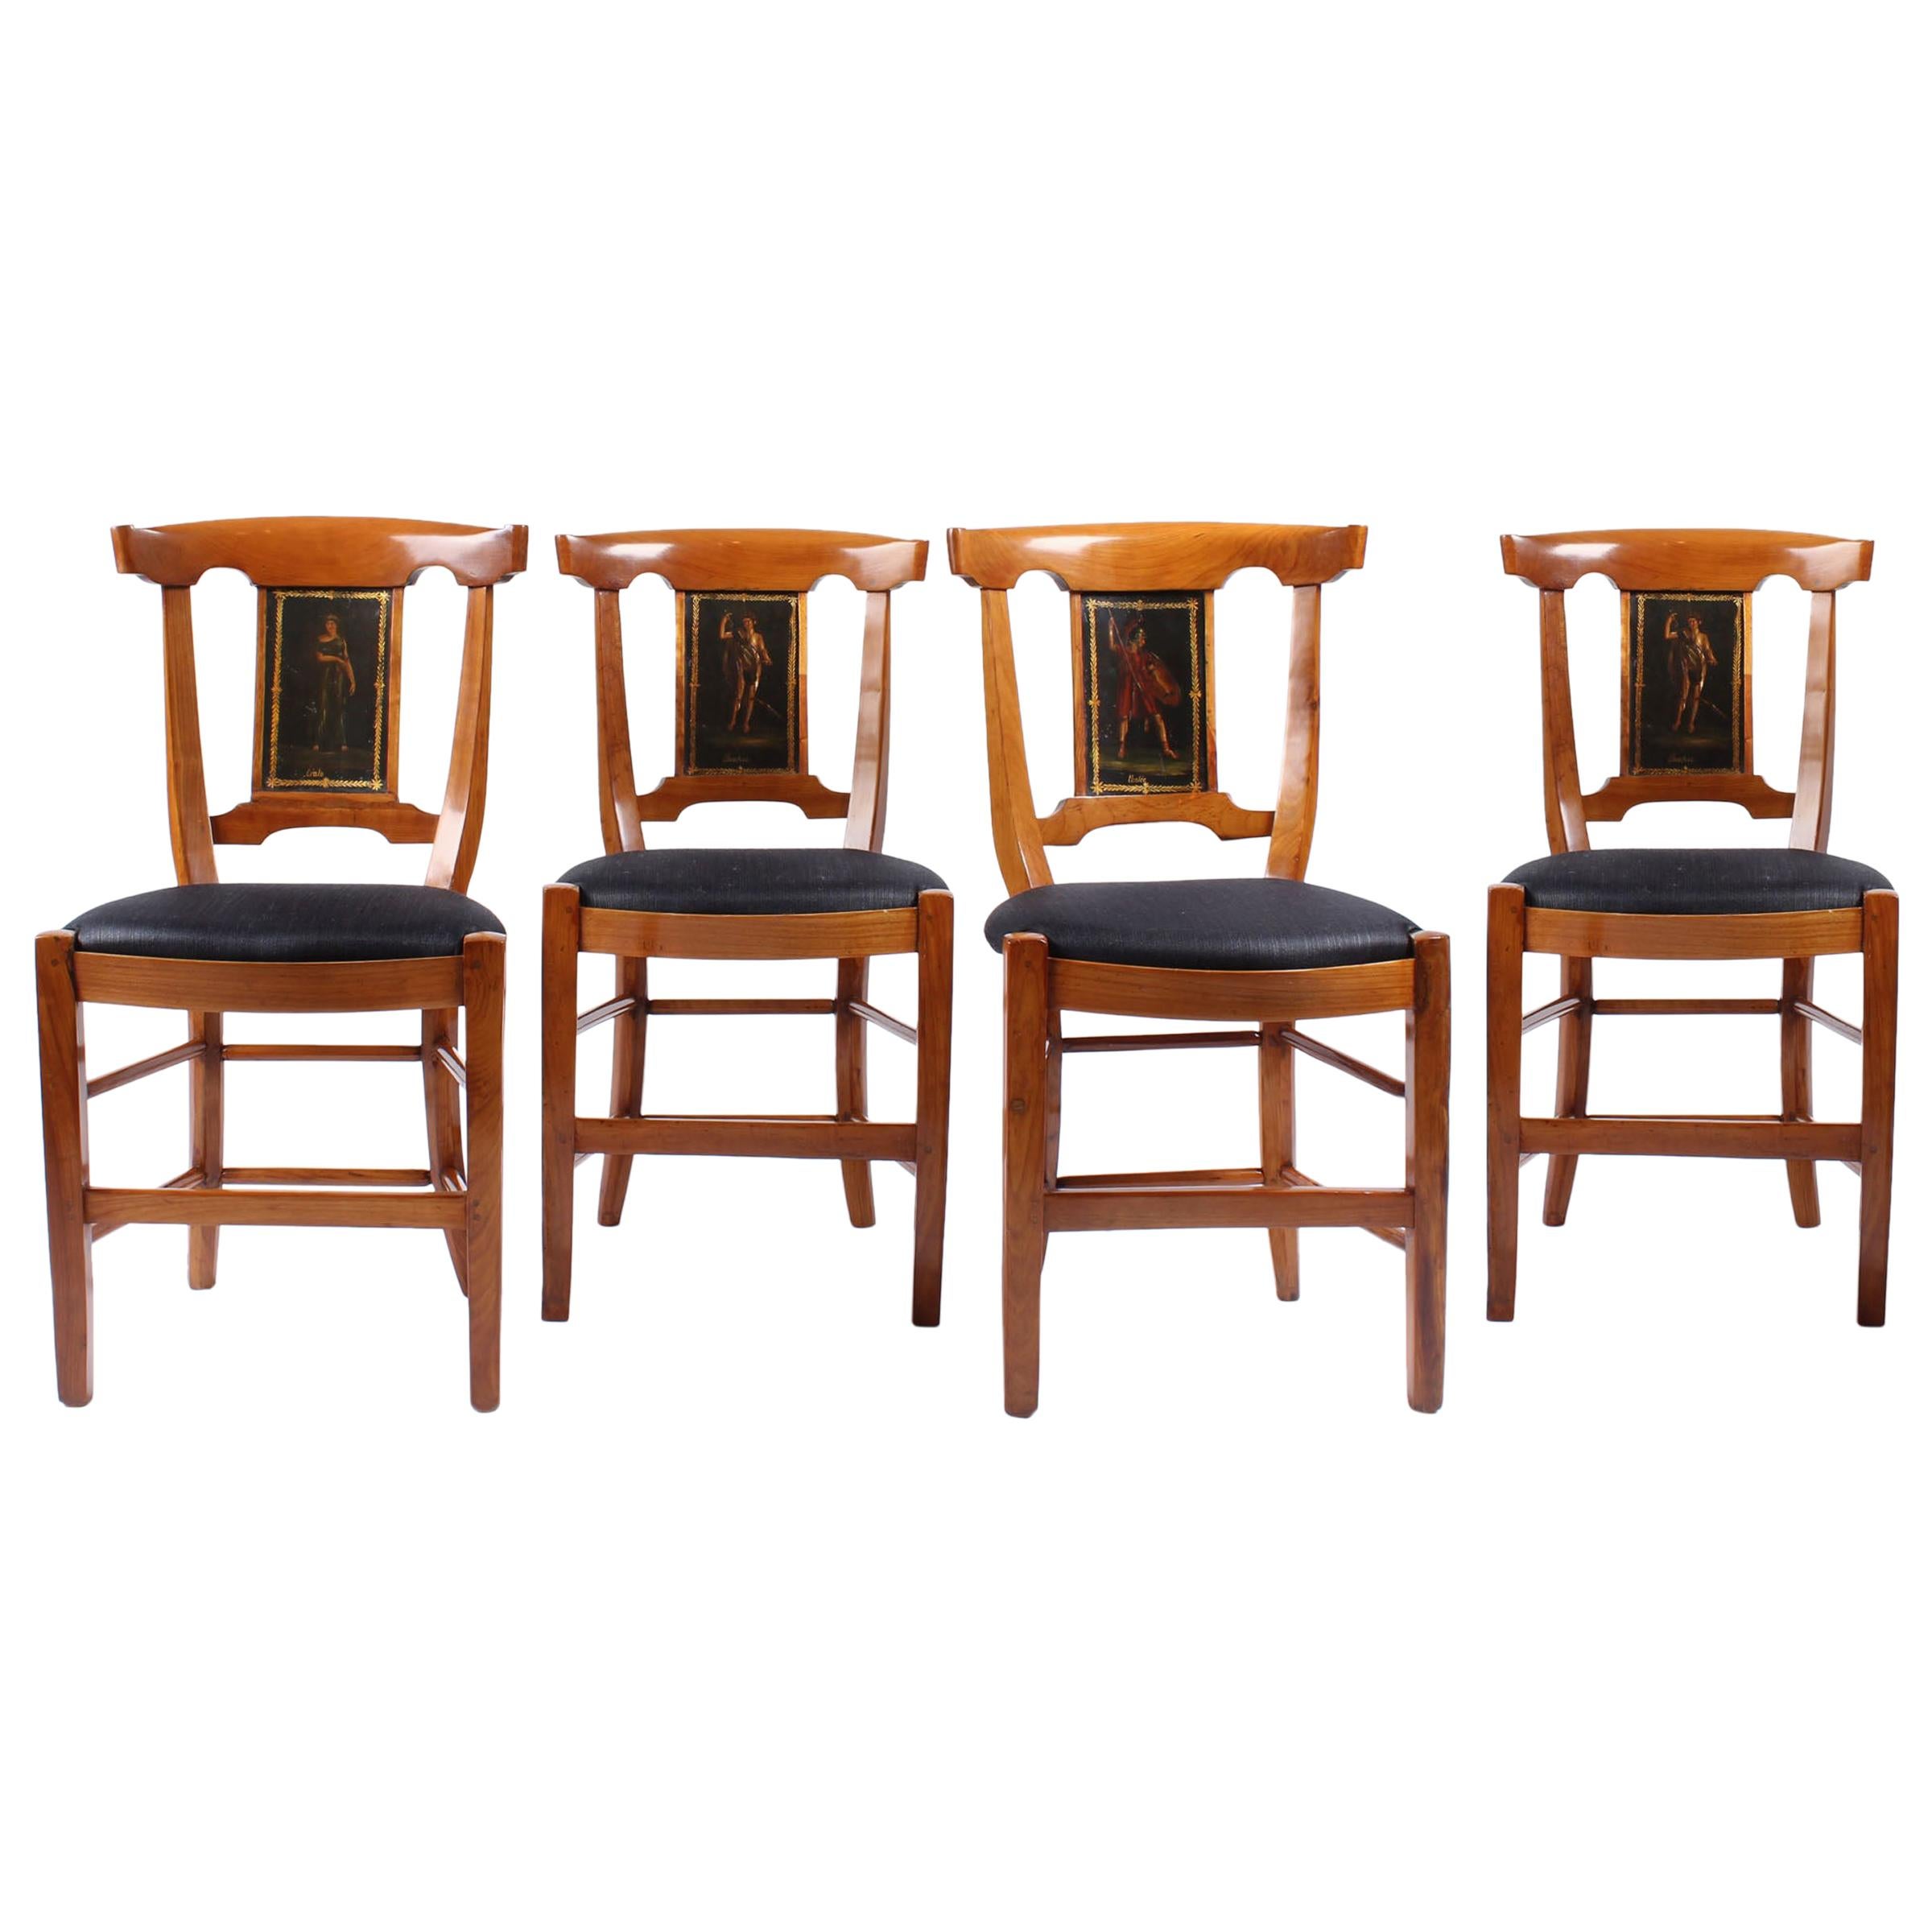 Satz von vier Stühlen aus dem 18. Jahrhundert, Frankreich, Kirsche, bemalt, Directoire, um 1800